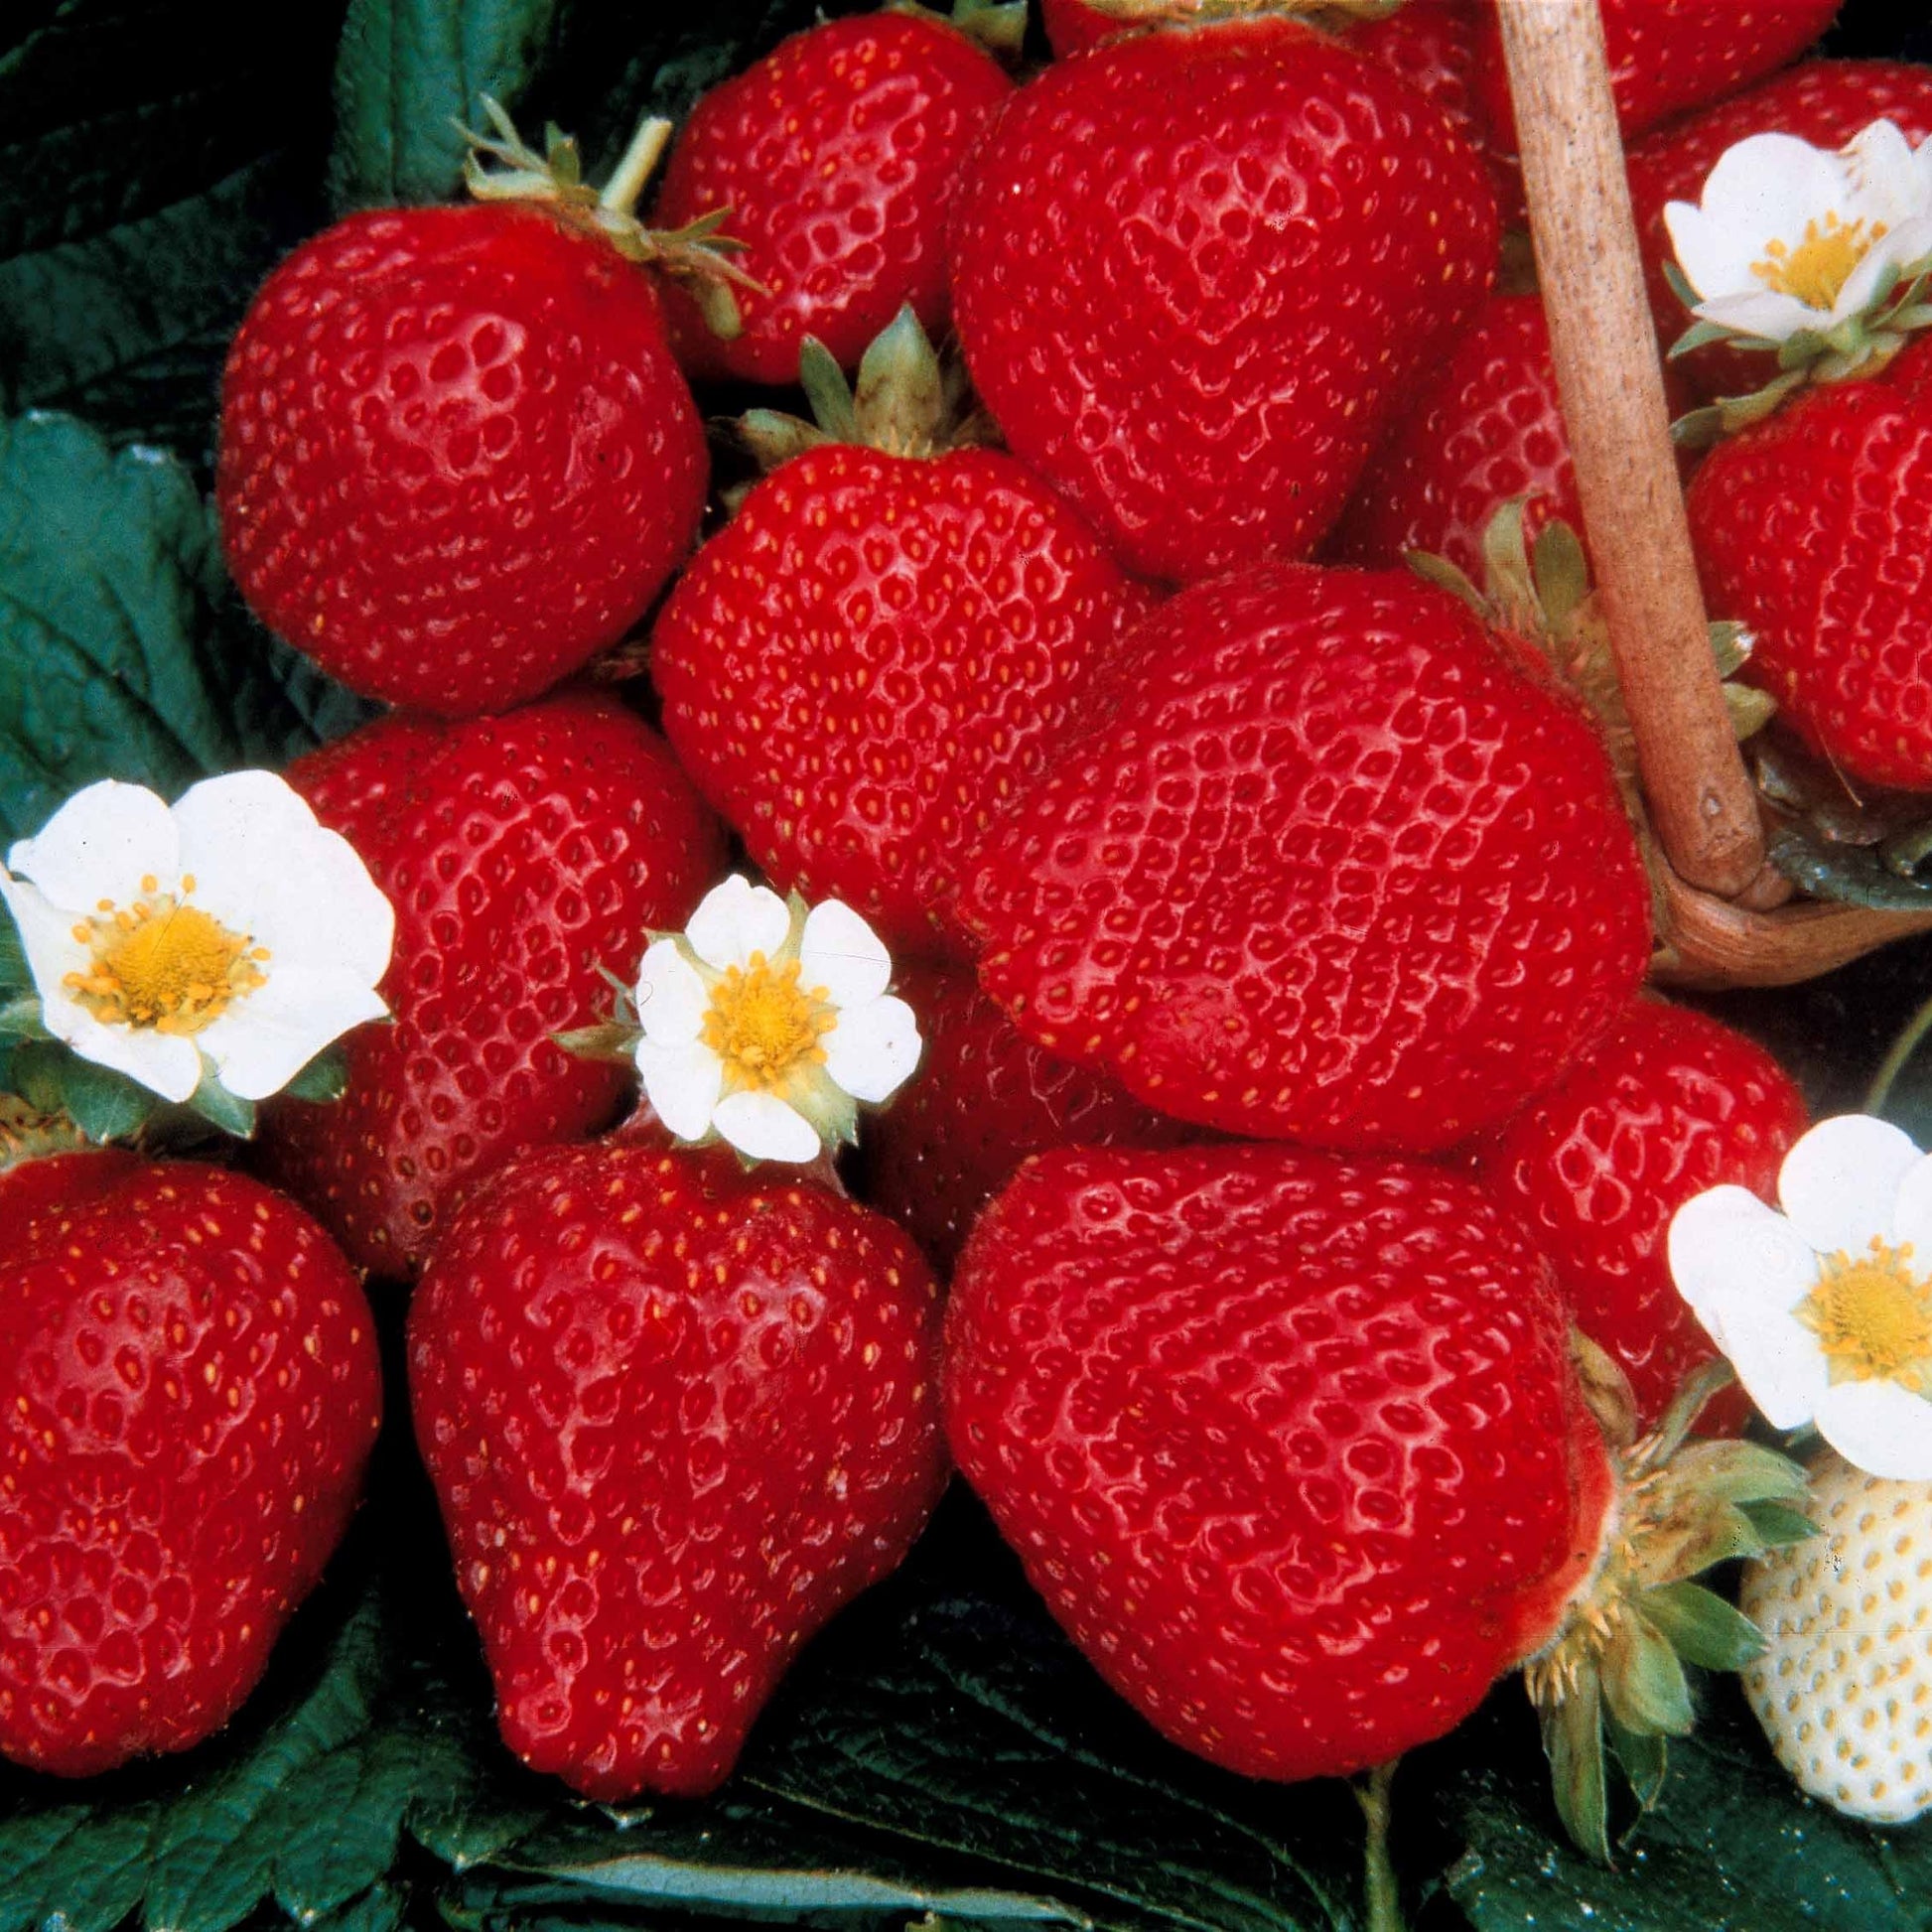 Sammlung 6 Monate Erdbeeren: Mara des Bois, Maestro, Gariguette. (x60) - Fragaria 'mara des bois', 'maestro', 'gariguette' - Kleine Obstbäume